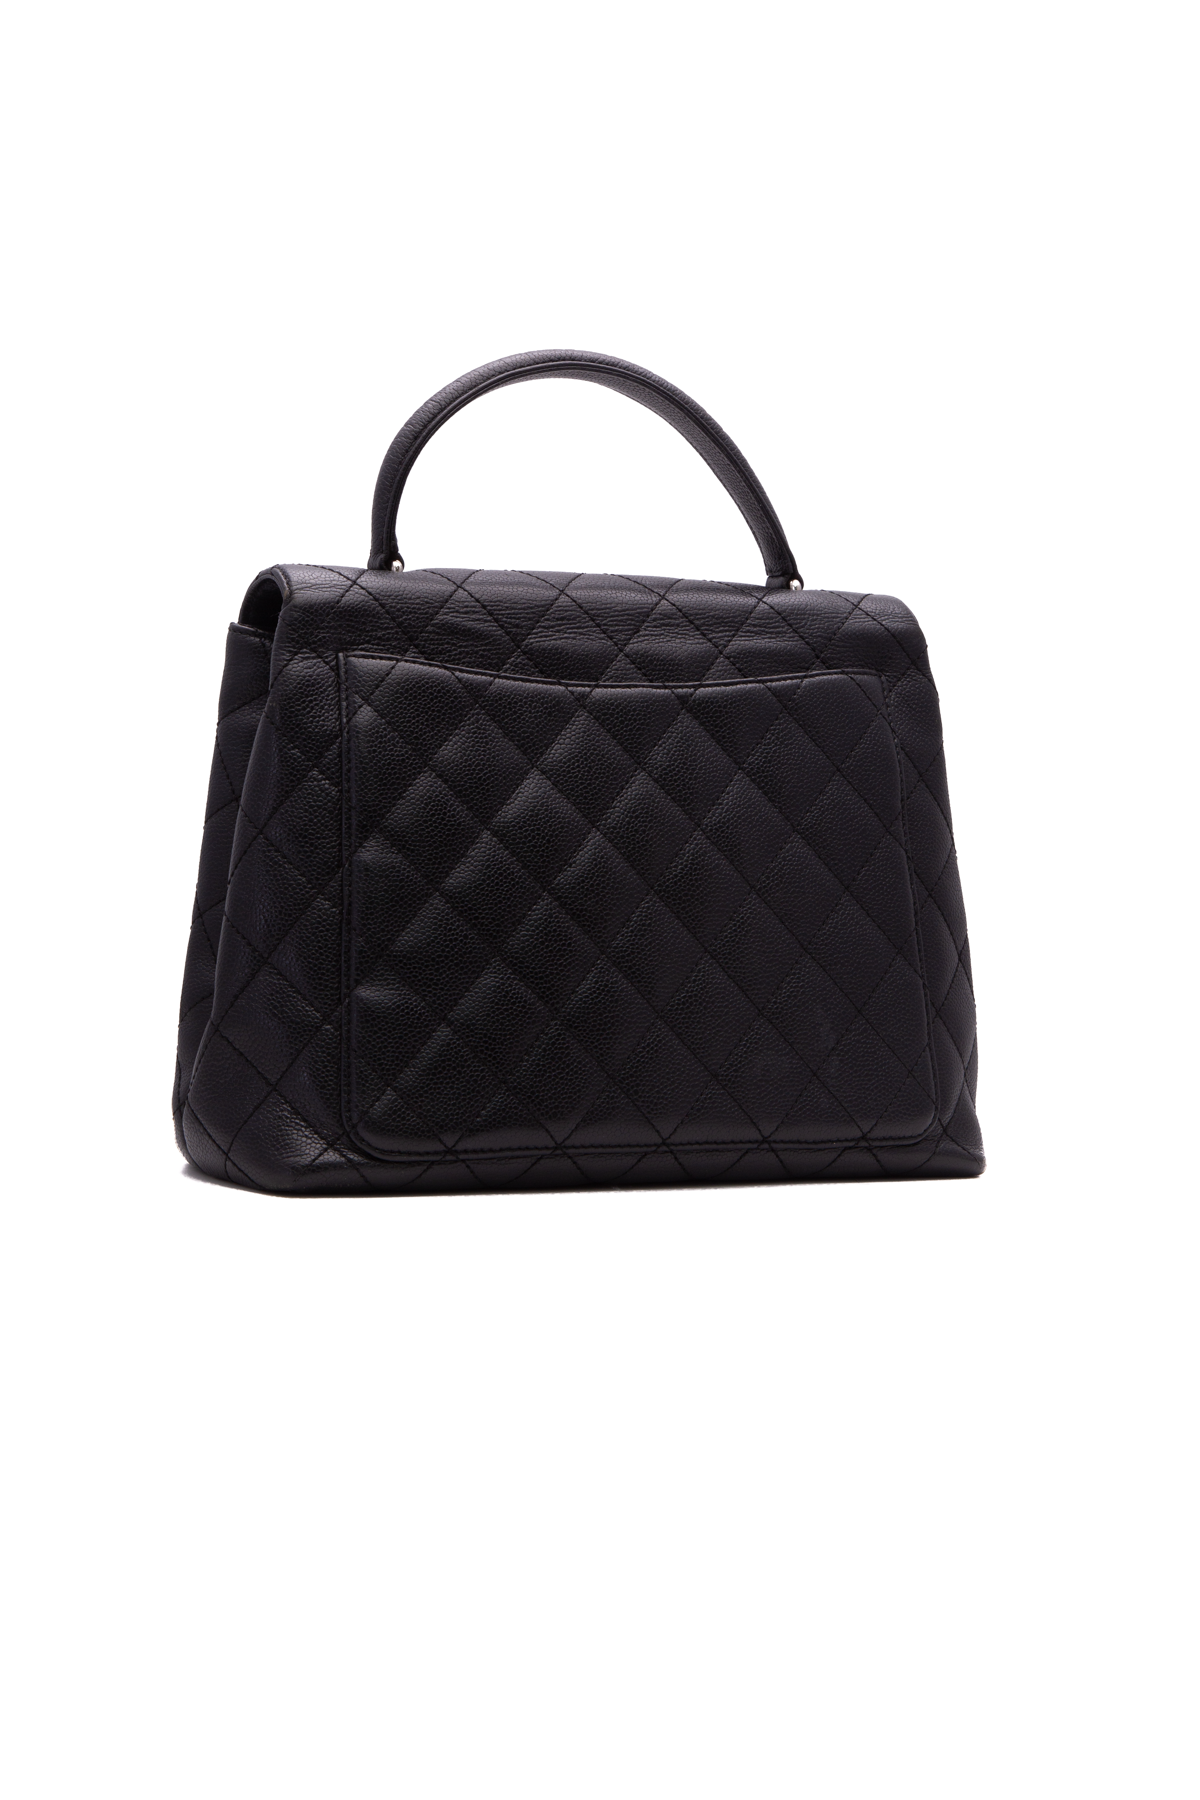 Louis Vuitton, Bags, Louis Vuitton Vintage Kelly Evening Top Handle  Satchel